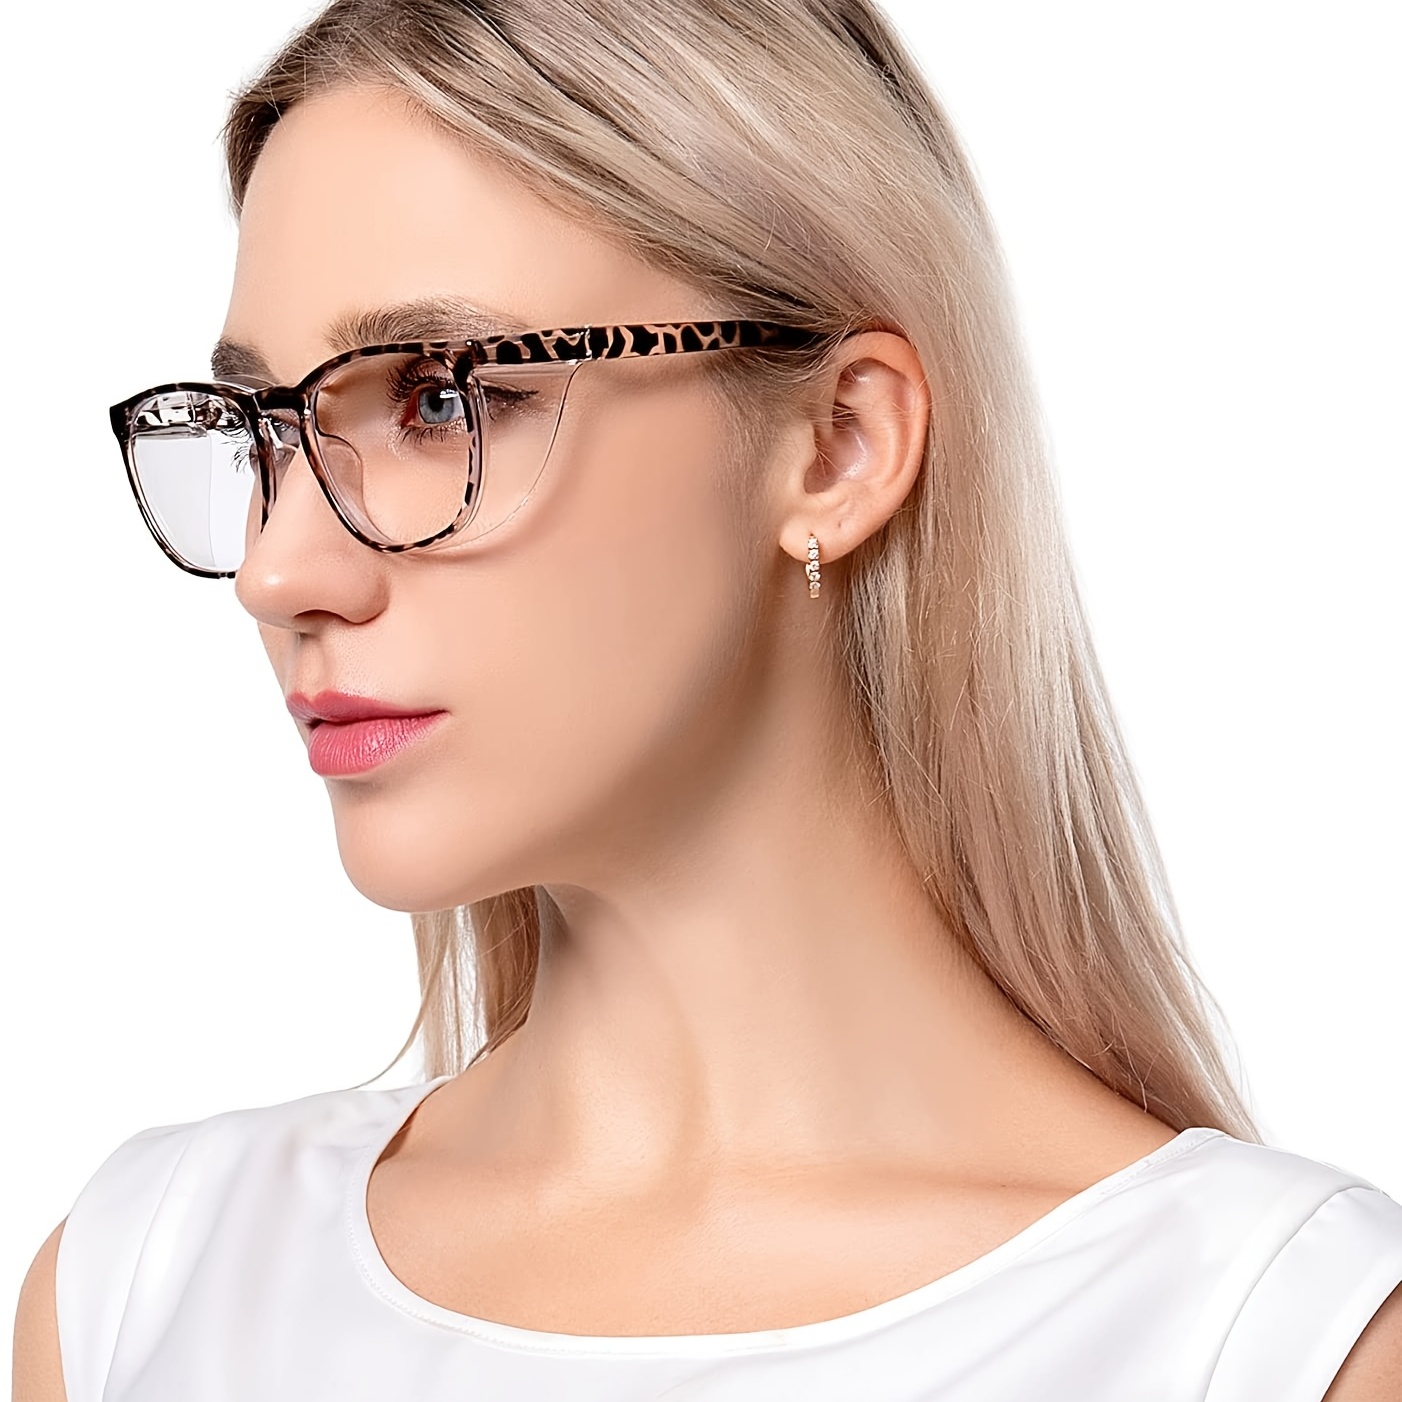 Gafas de seguridad para laboratorio dental, gafas dentales para blanquear  los dientes, gafas de seguridad antivaho, gafas de seguridad con protección